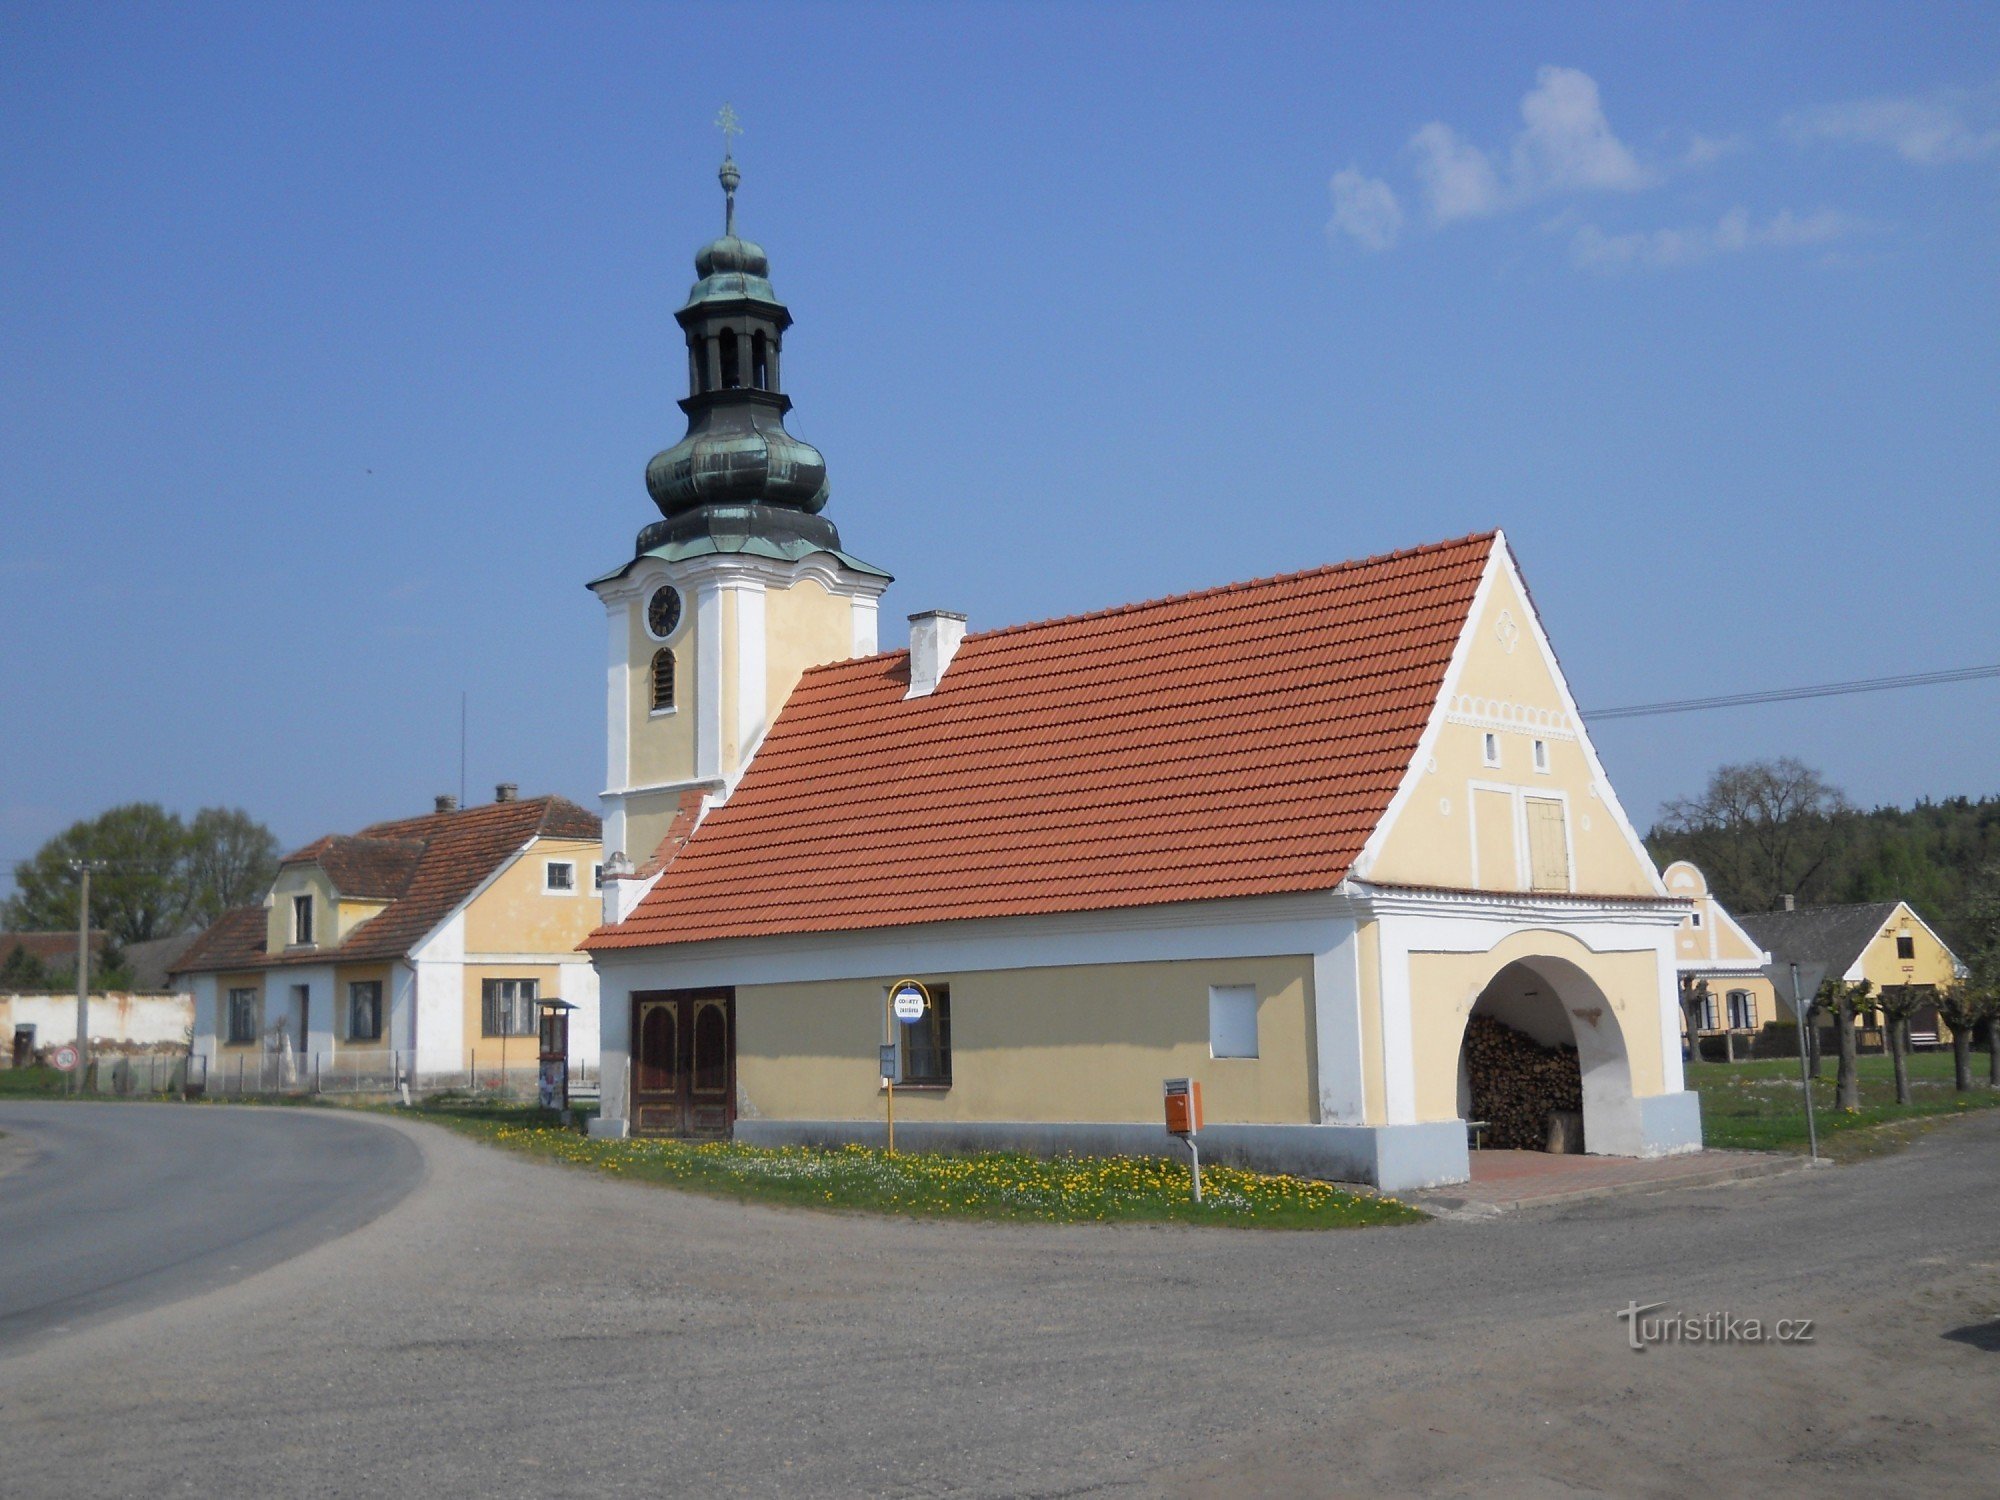 Svinky - capela cu fosta forja